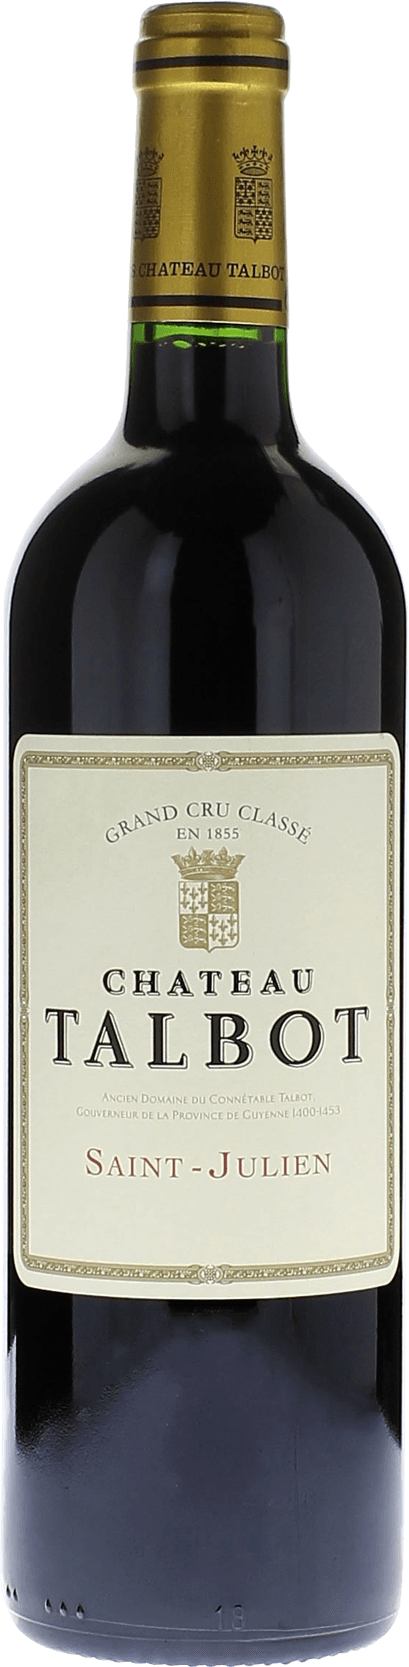 Talbot 2014 4me Grand cru class Saint-Julien, Bordeaux rouge